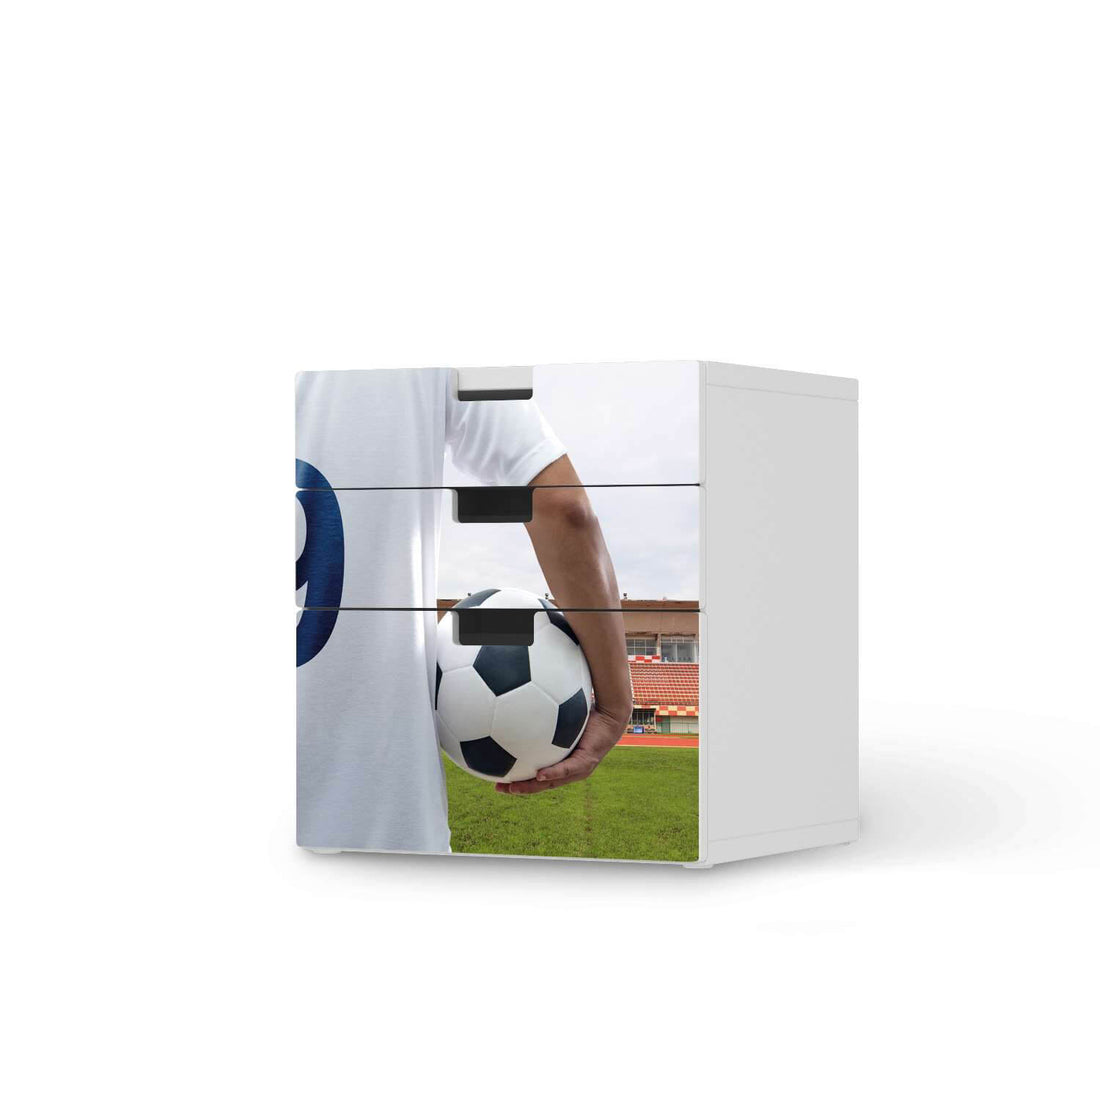 Folie für Möbel Footballmania - IKEA Stuva Kommode - 3 Schubladen (Kombination 1)  - weiss